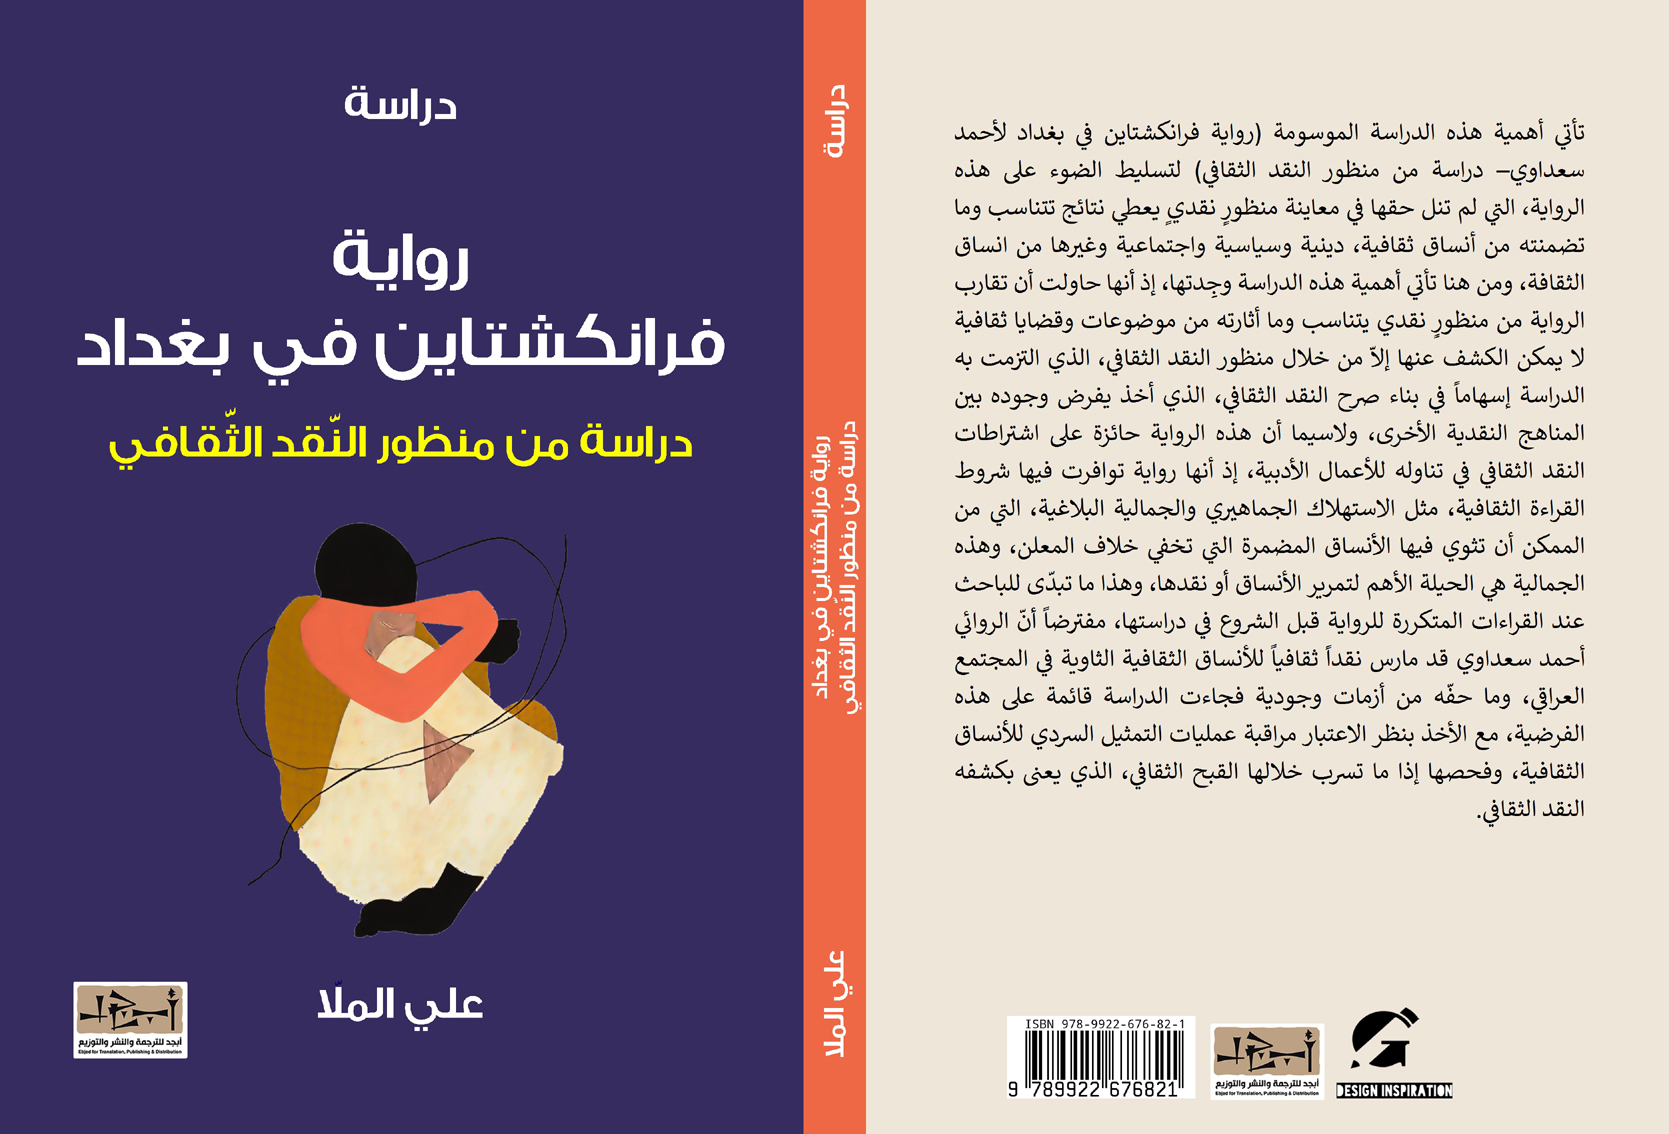 رواية فرانكشتاين في بغداد – دراسة من منظور النقد الثقافي - على الملّا